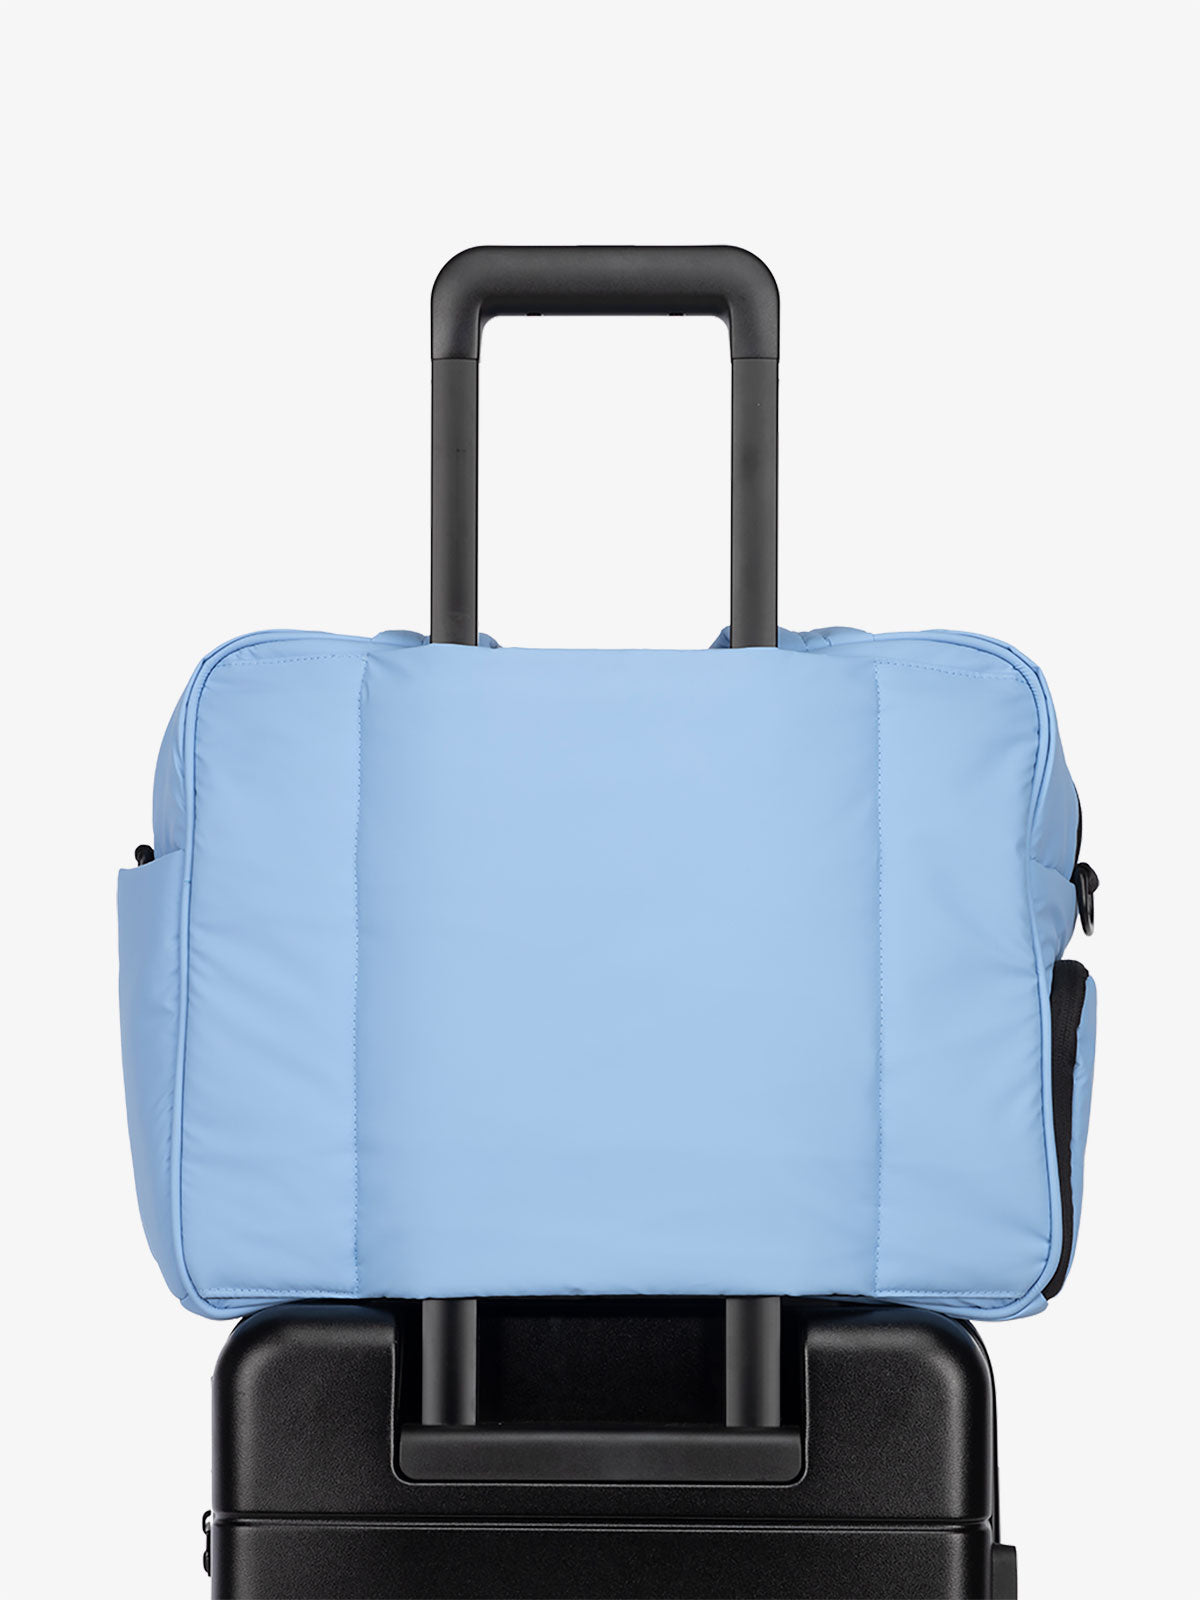 CALPAK Luka Weekender Duffel Bag with trolley sleeve for travel in winter sky